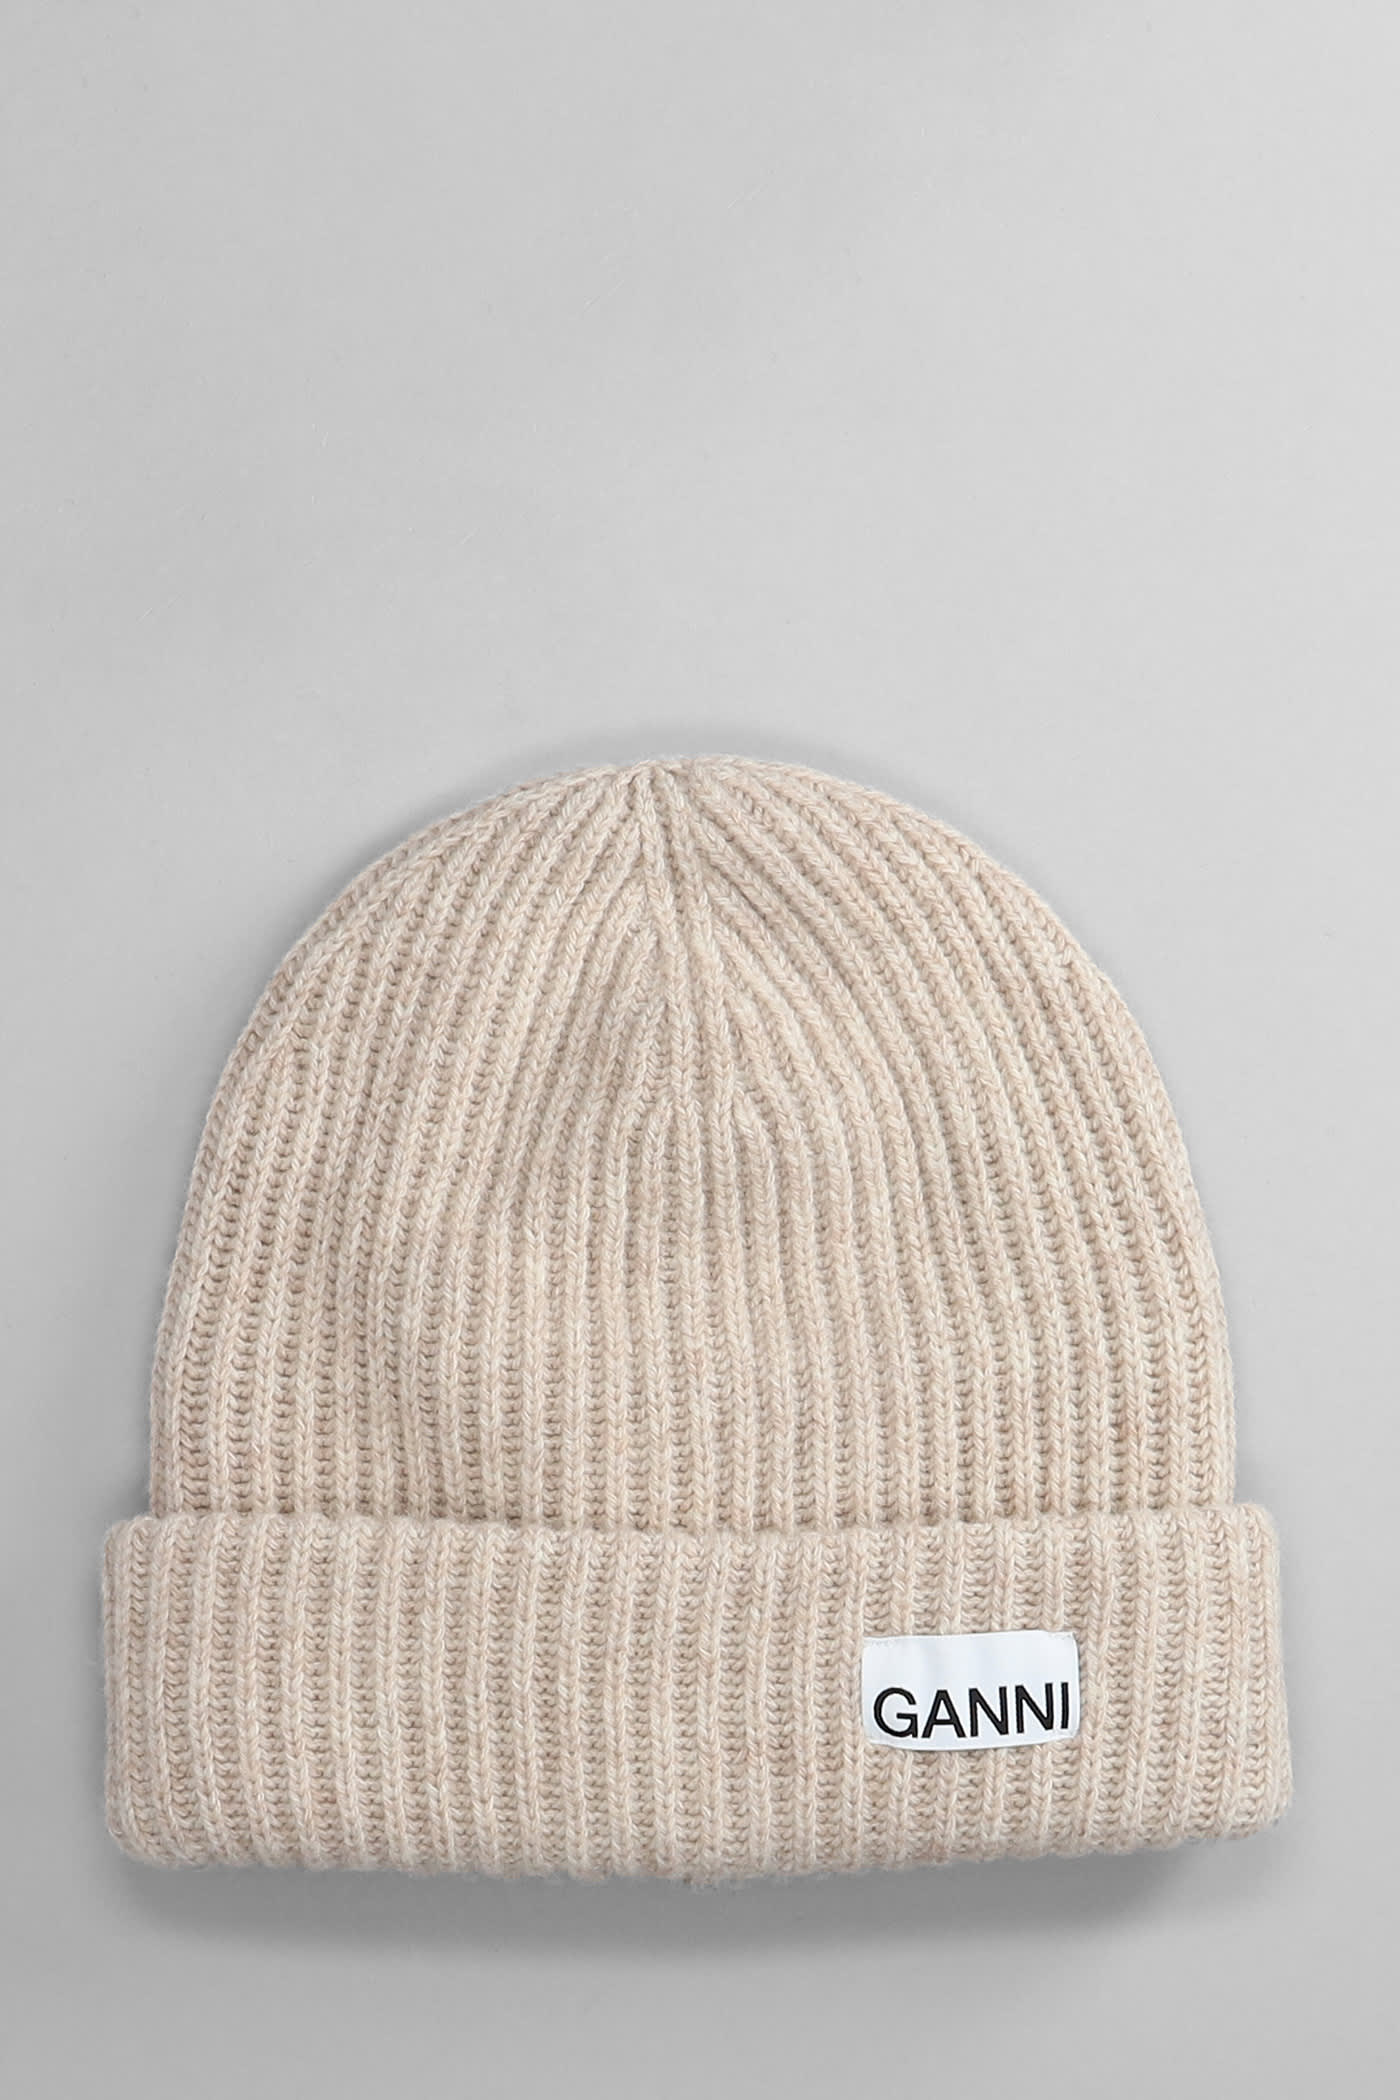 Ganni Hats In Beige Wool